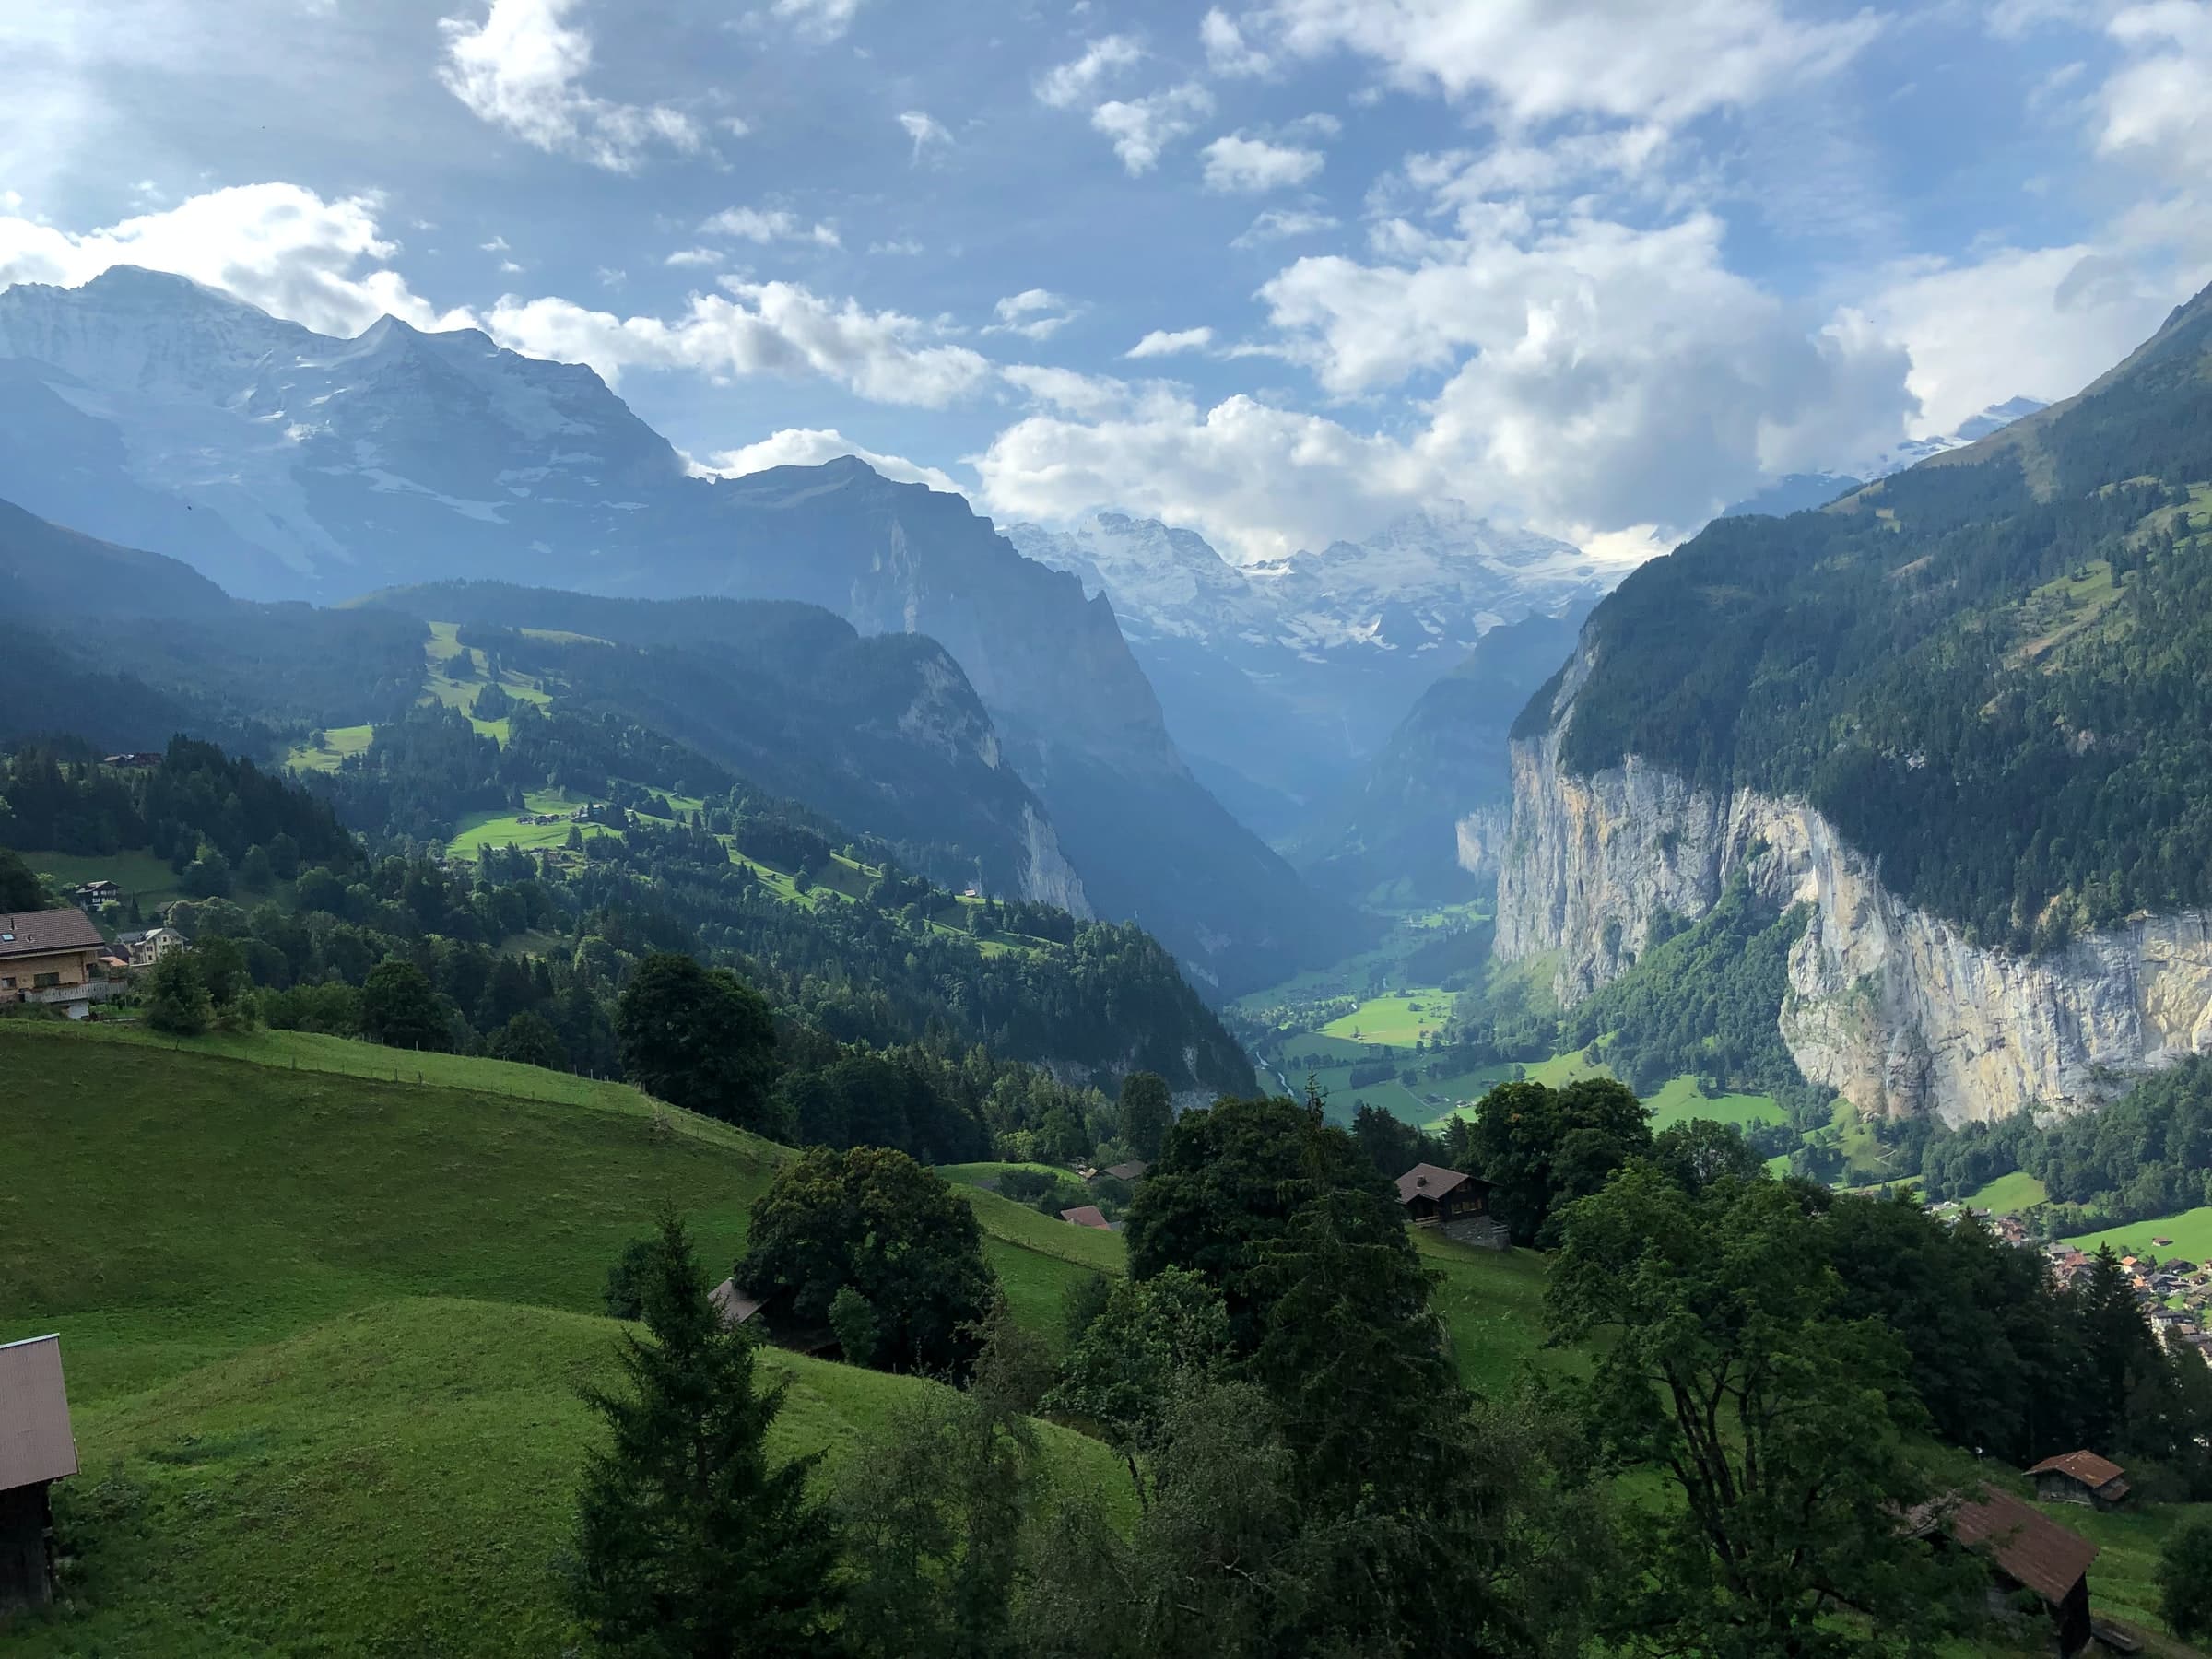 De vallei waar Lauterbrunnen in ligt vanaf een een hoger gelegen punt ongeveer 5 kilometer verderop